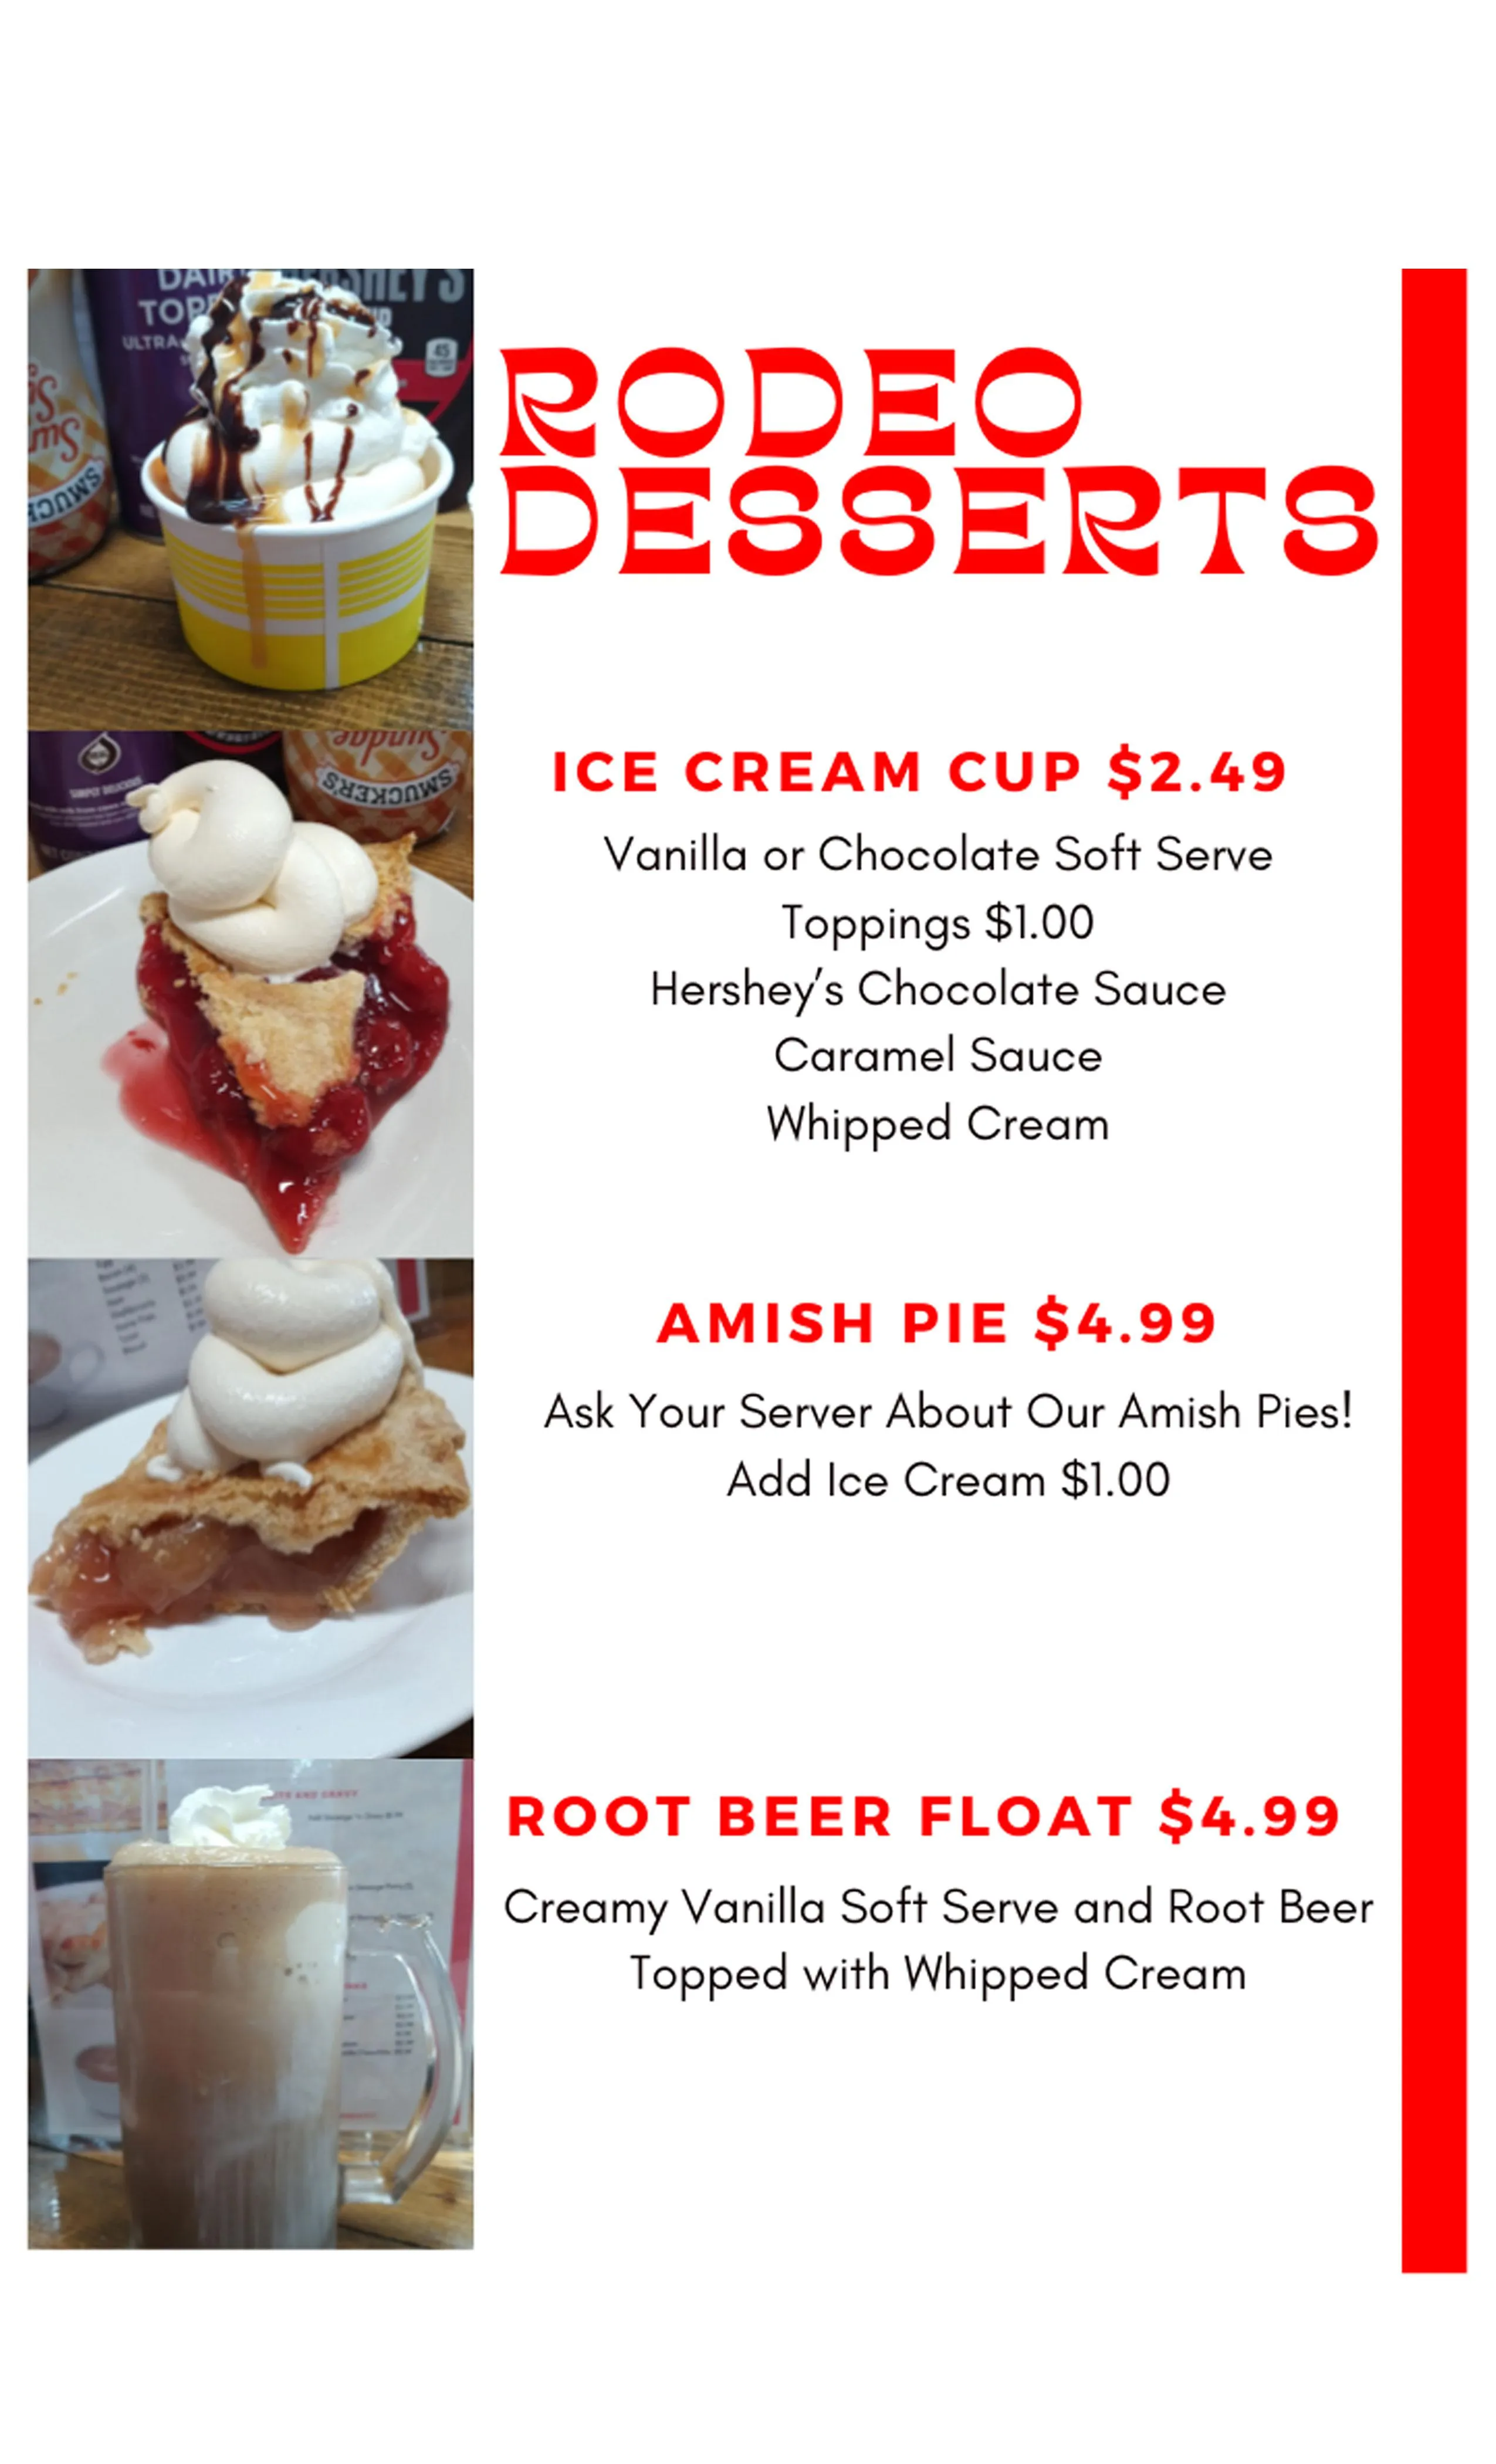 The Rodeo in Okmulgee dessert menu.